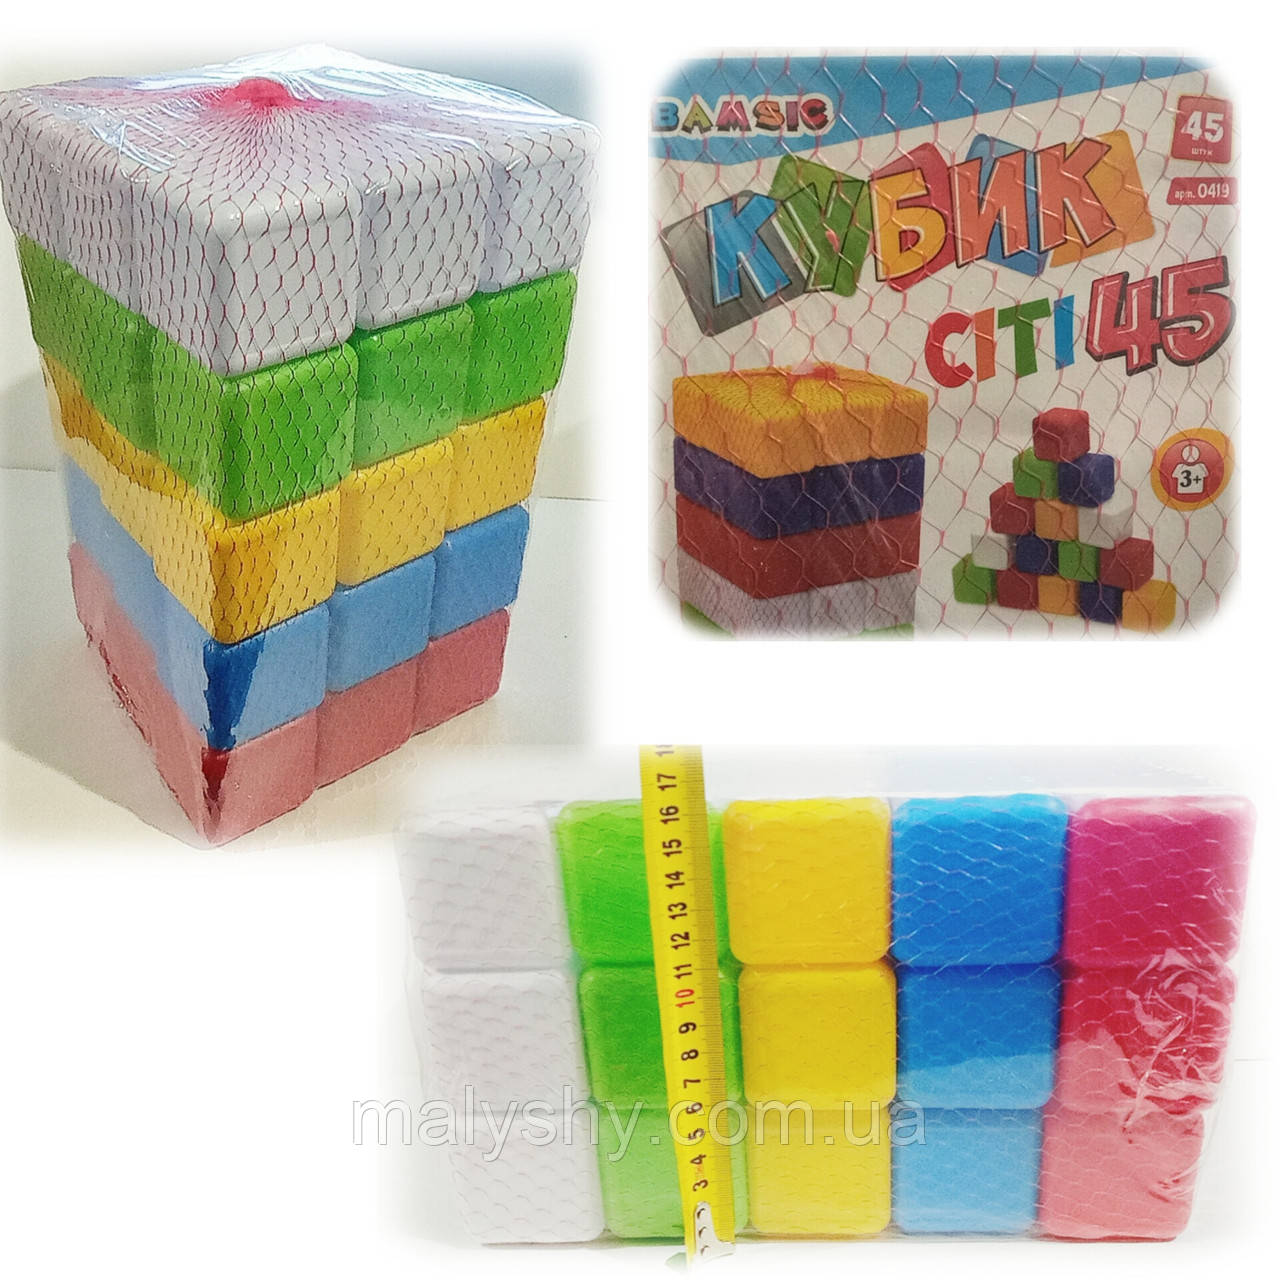 Набір дитячий - кубики Сіті - 45 штук / BS-0419